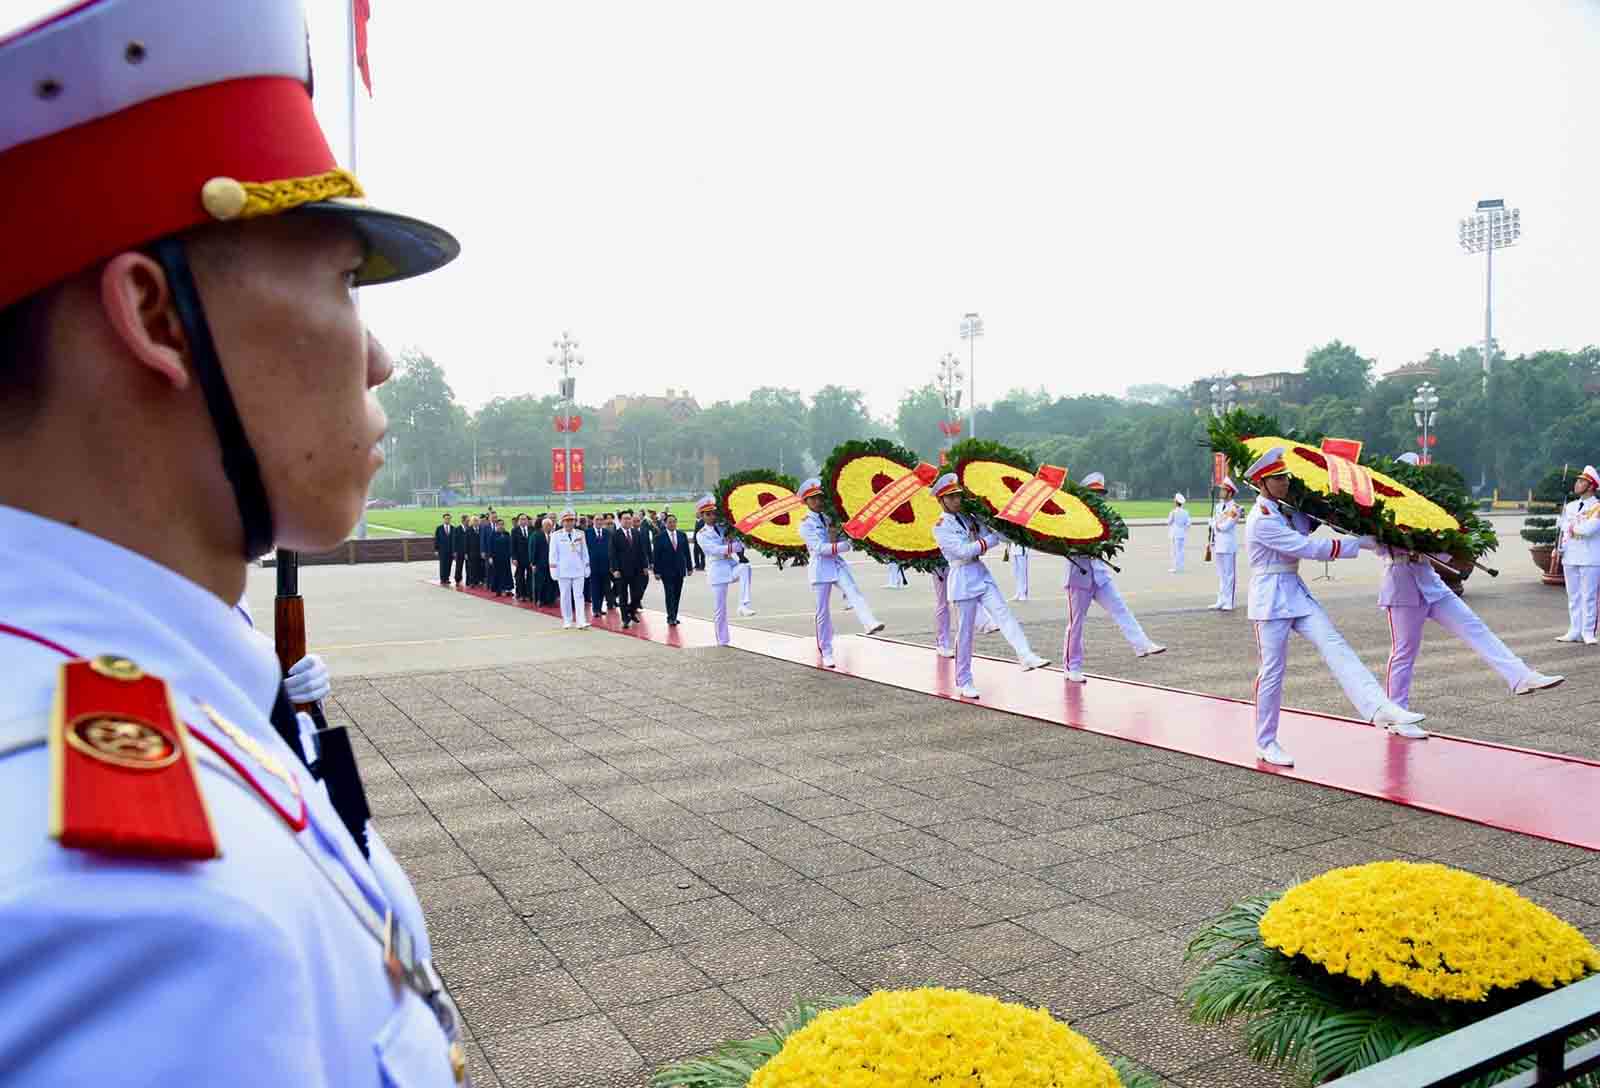 Các đồng chí lãnh đạo, nguyên lãnh đạo Đảng, Nhà nước vào Lăng viếng Chủ tịch Hồ Chí Minh, vòng hoa của đoàn mang dòng chữ “Đời đời nhớ ơn Chủ tịch Hồ Chí Minh vĩ đại”. Ảnh: Trần Hải